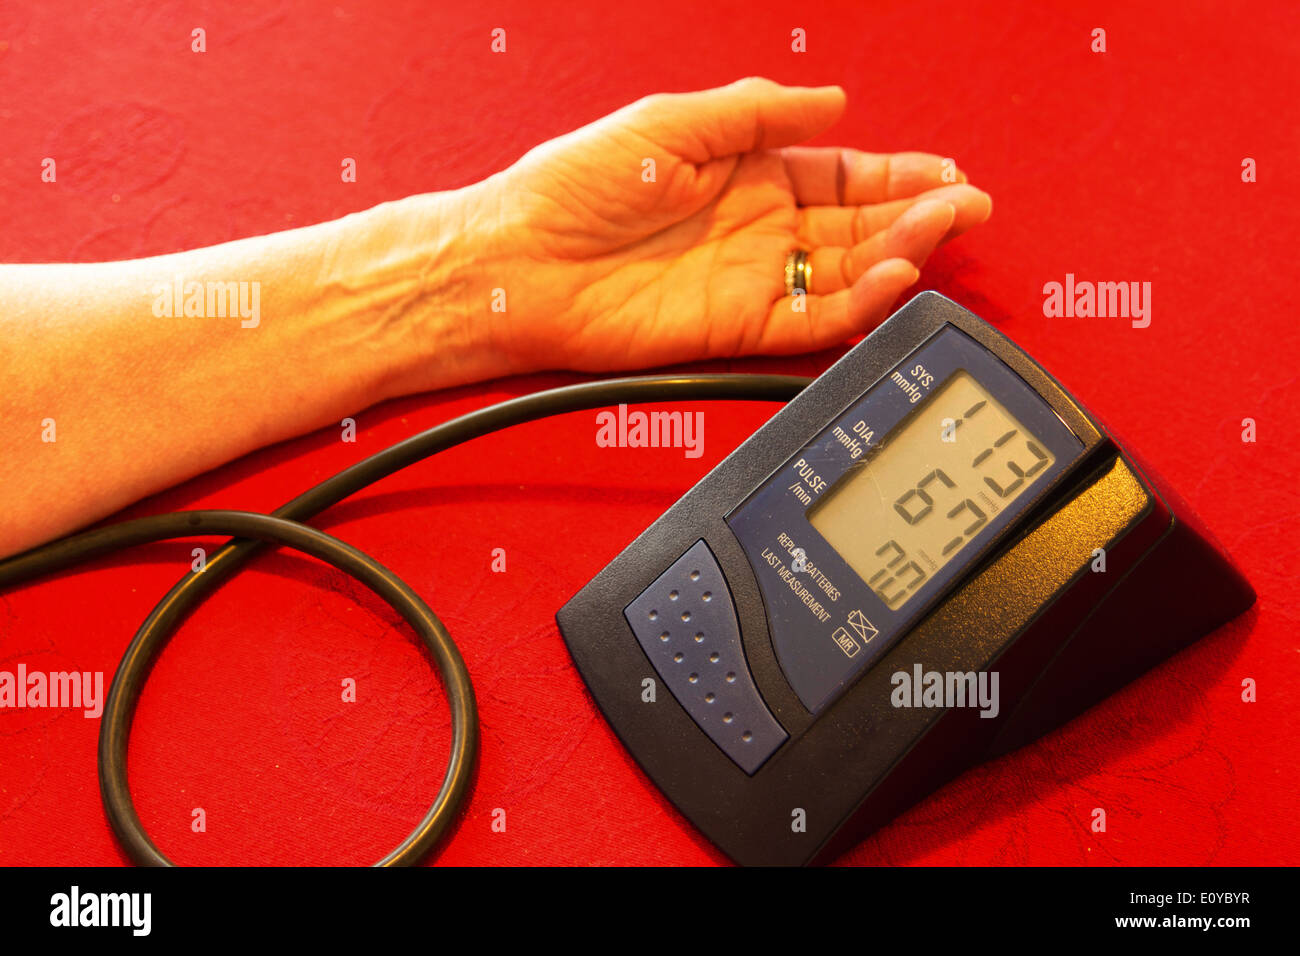 Unidad de Monitoreo ambulatorio de presión arterial Foto de stock